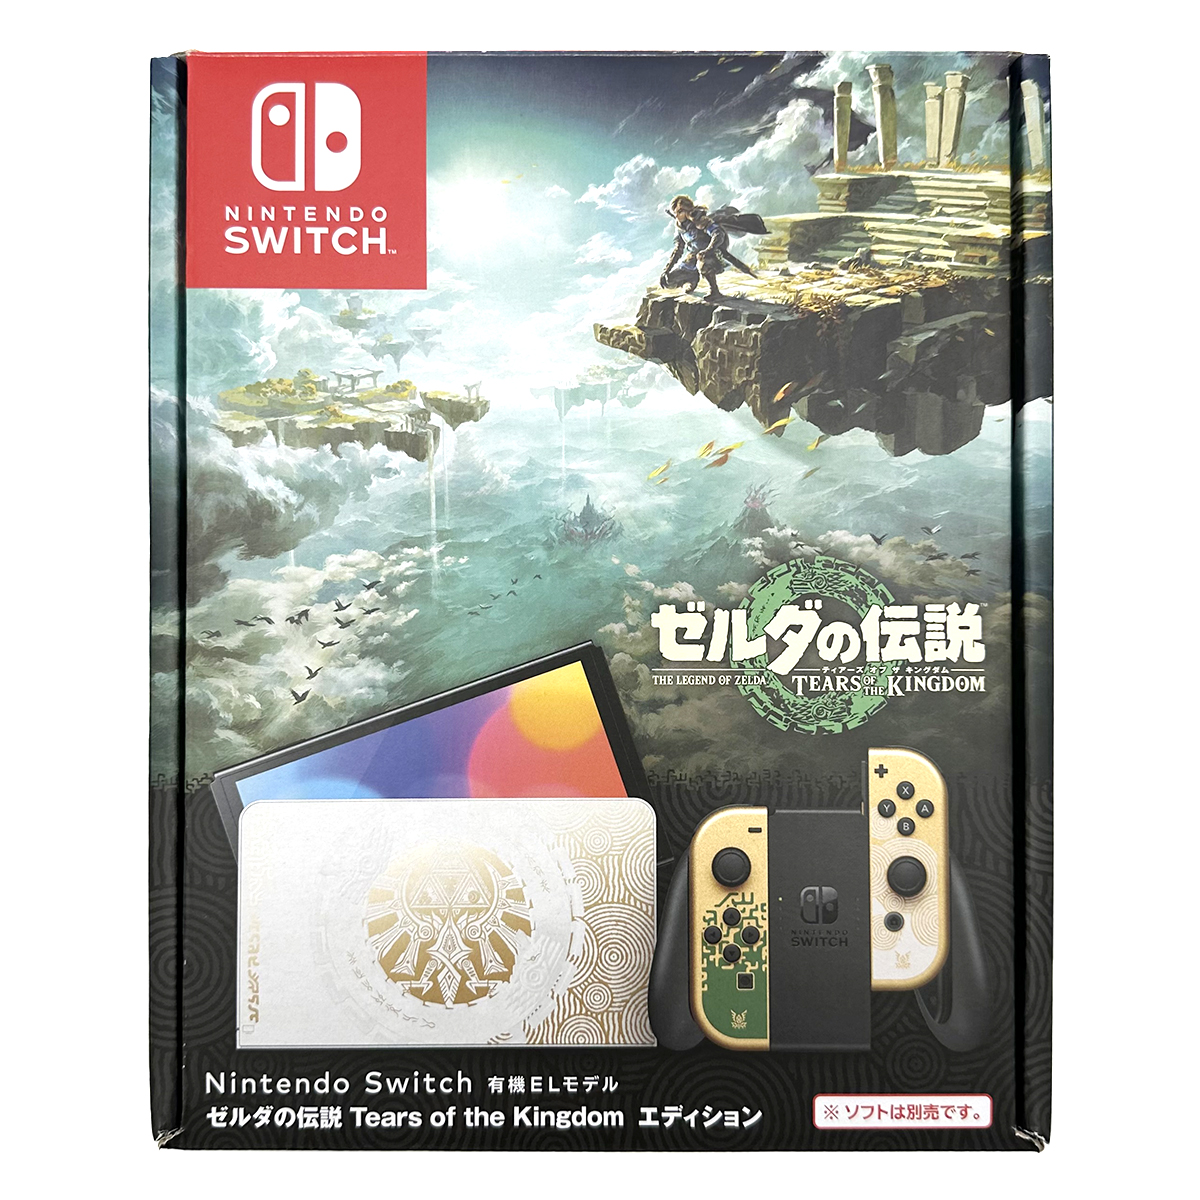 ニンテンドースイッチ(Nintendo Switch) 有機EL ゼルダの伝説 Tears of Kingdom エディション